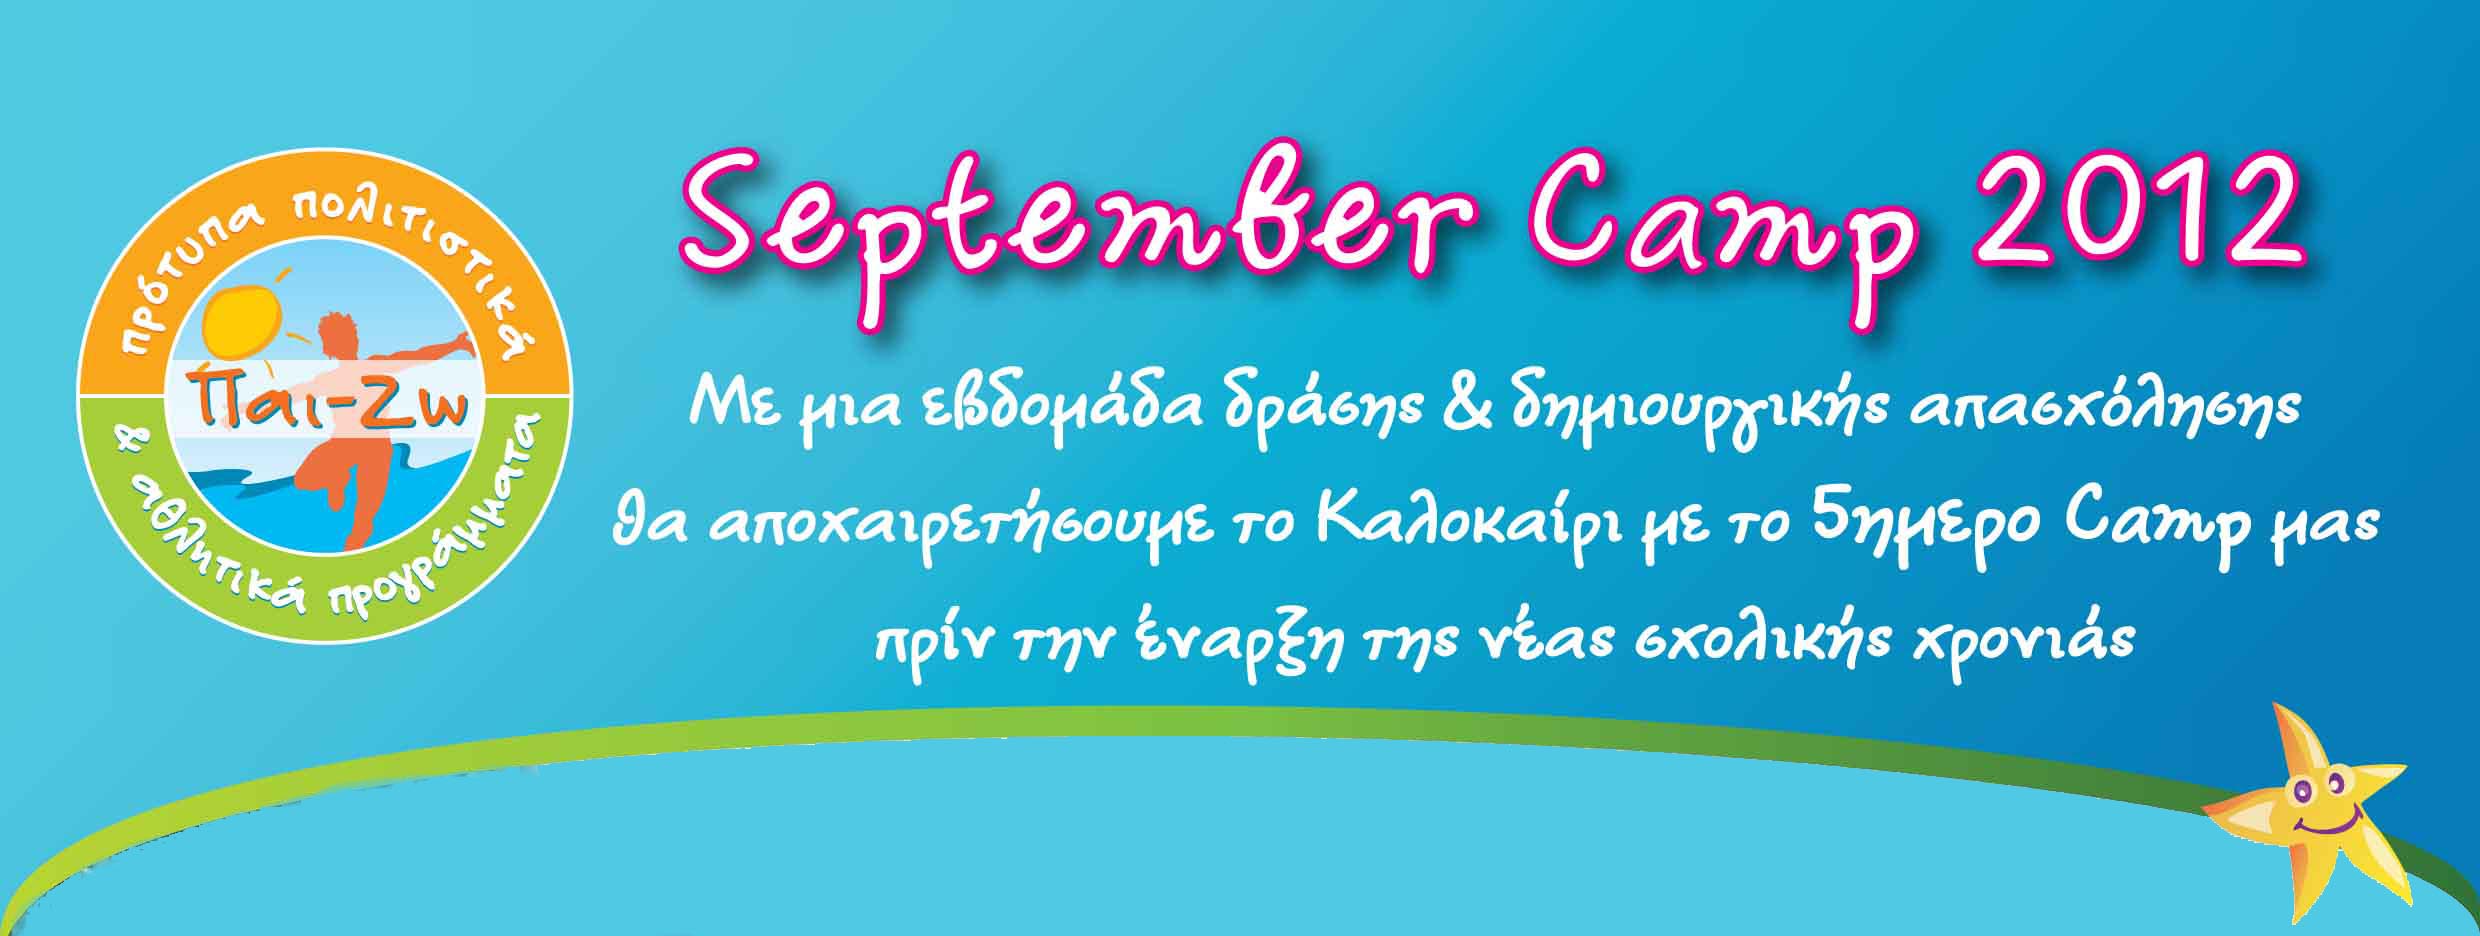 ΠαιΖω September Camp 2012